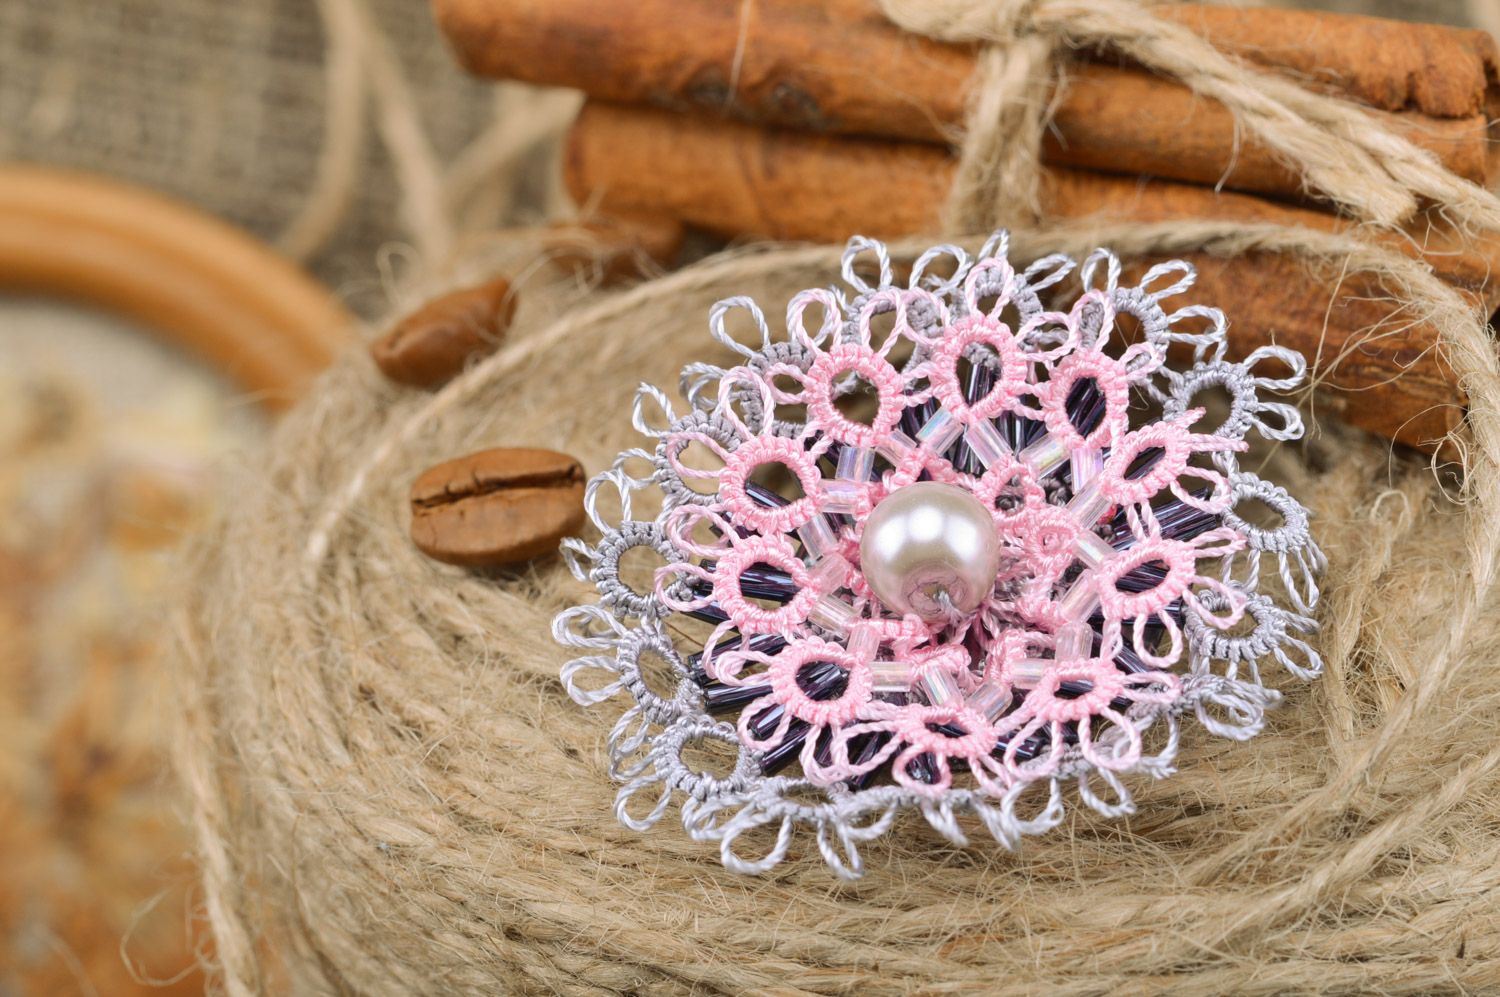 Текстильная брошь в виде серо-розового цветка ручной работы в технике фриволите фото 1